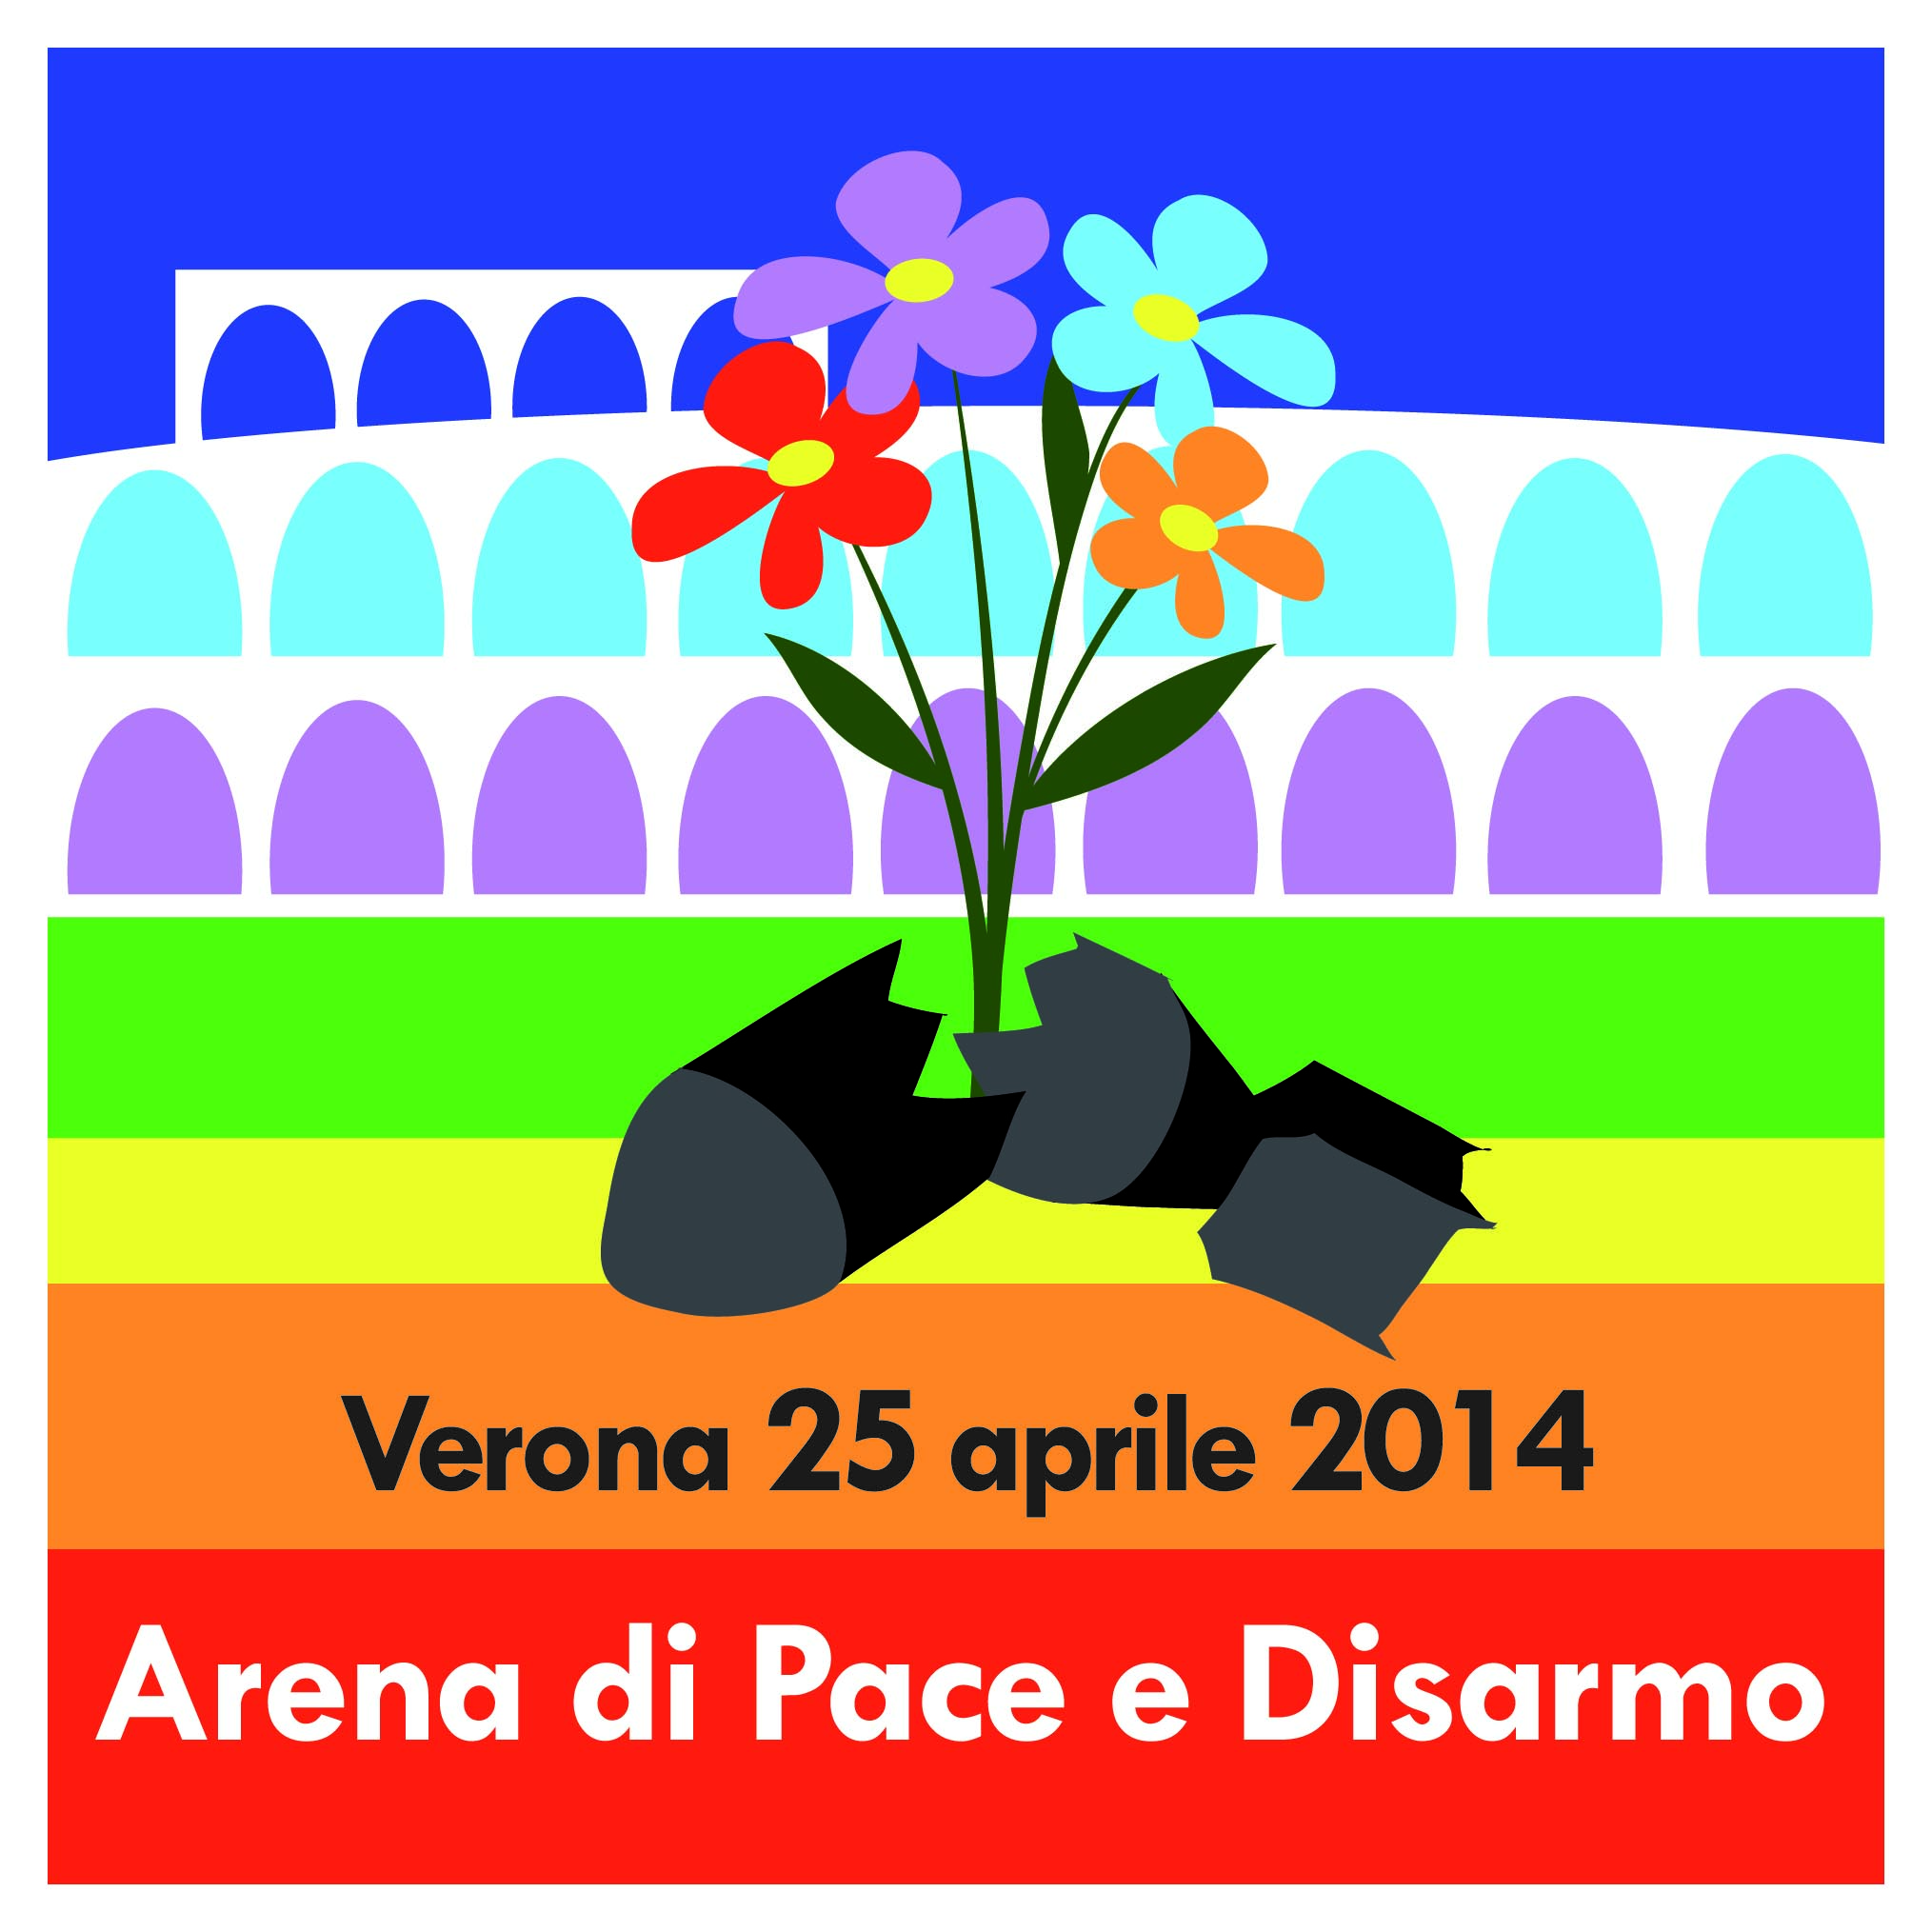 Verona 25 aprile: Arena di Pace e Disarmo